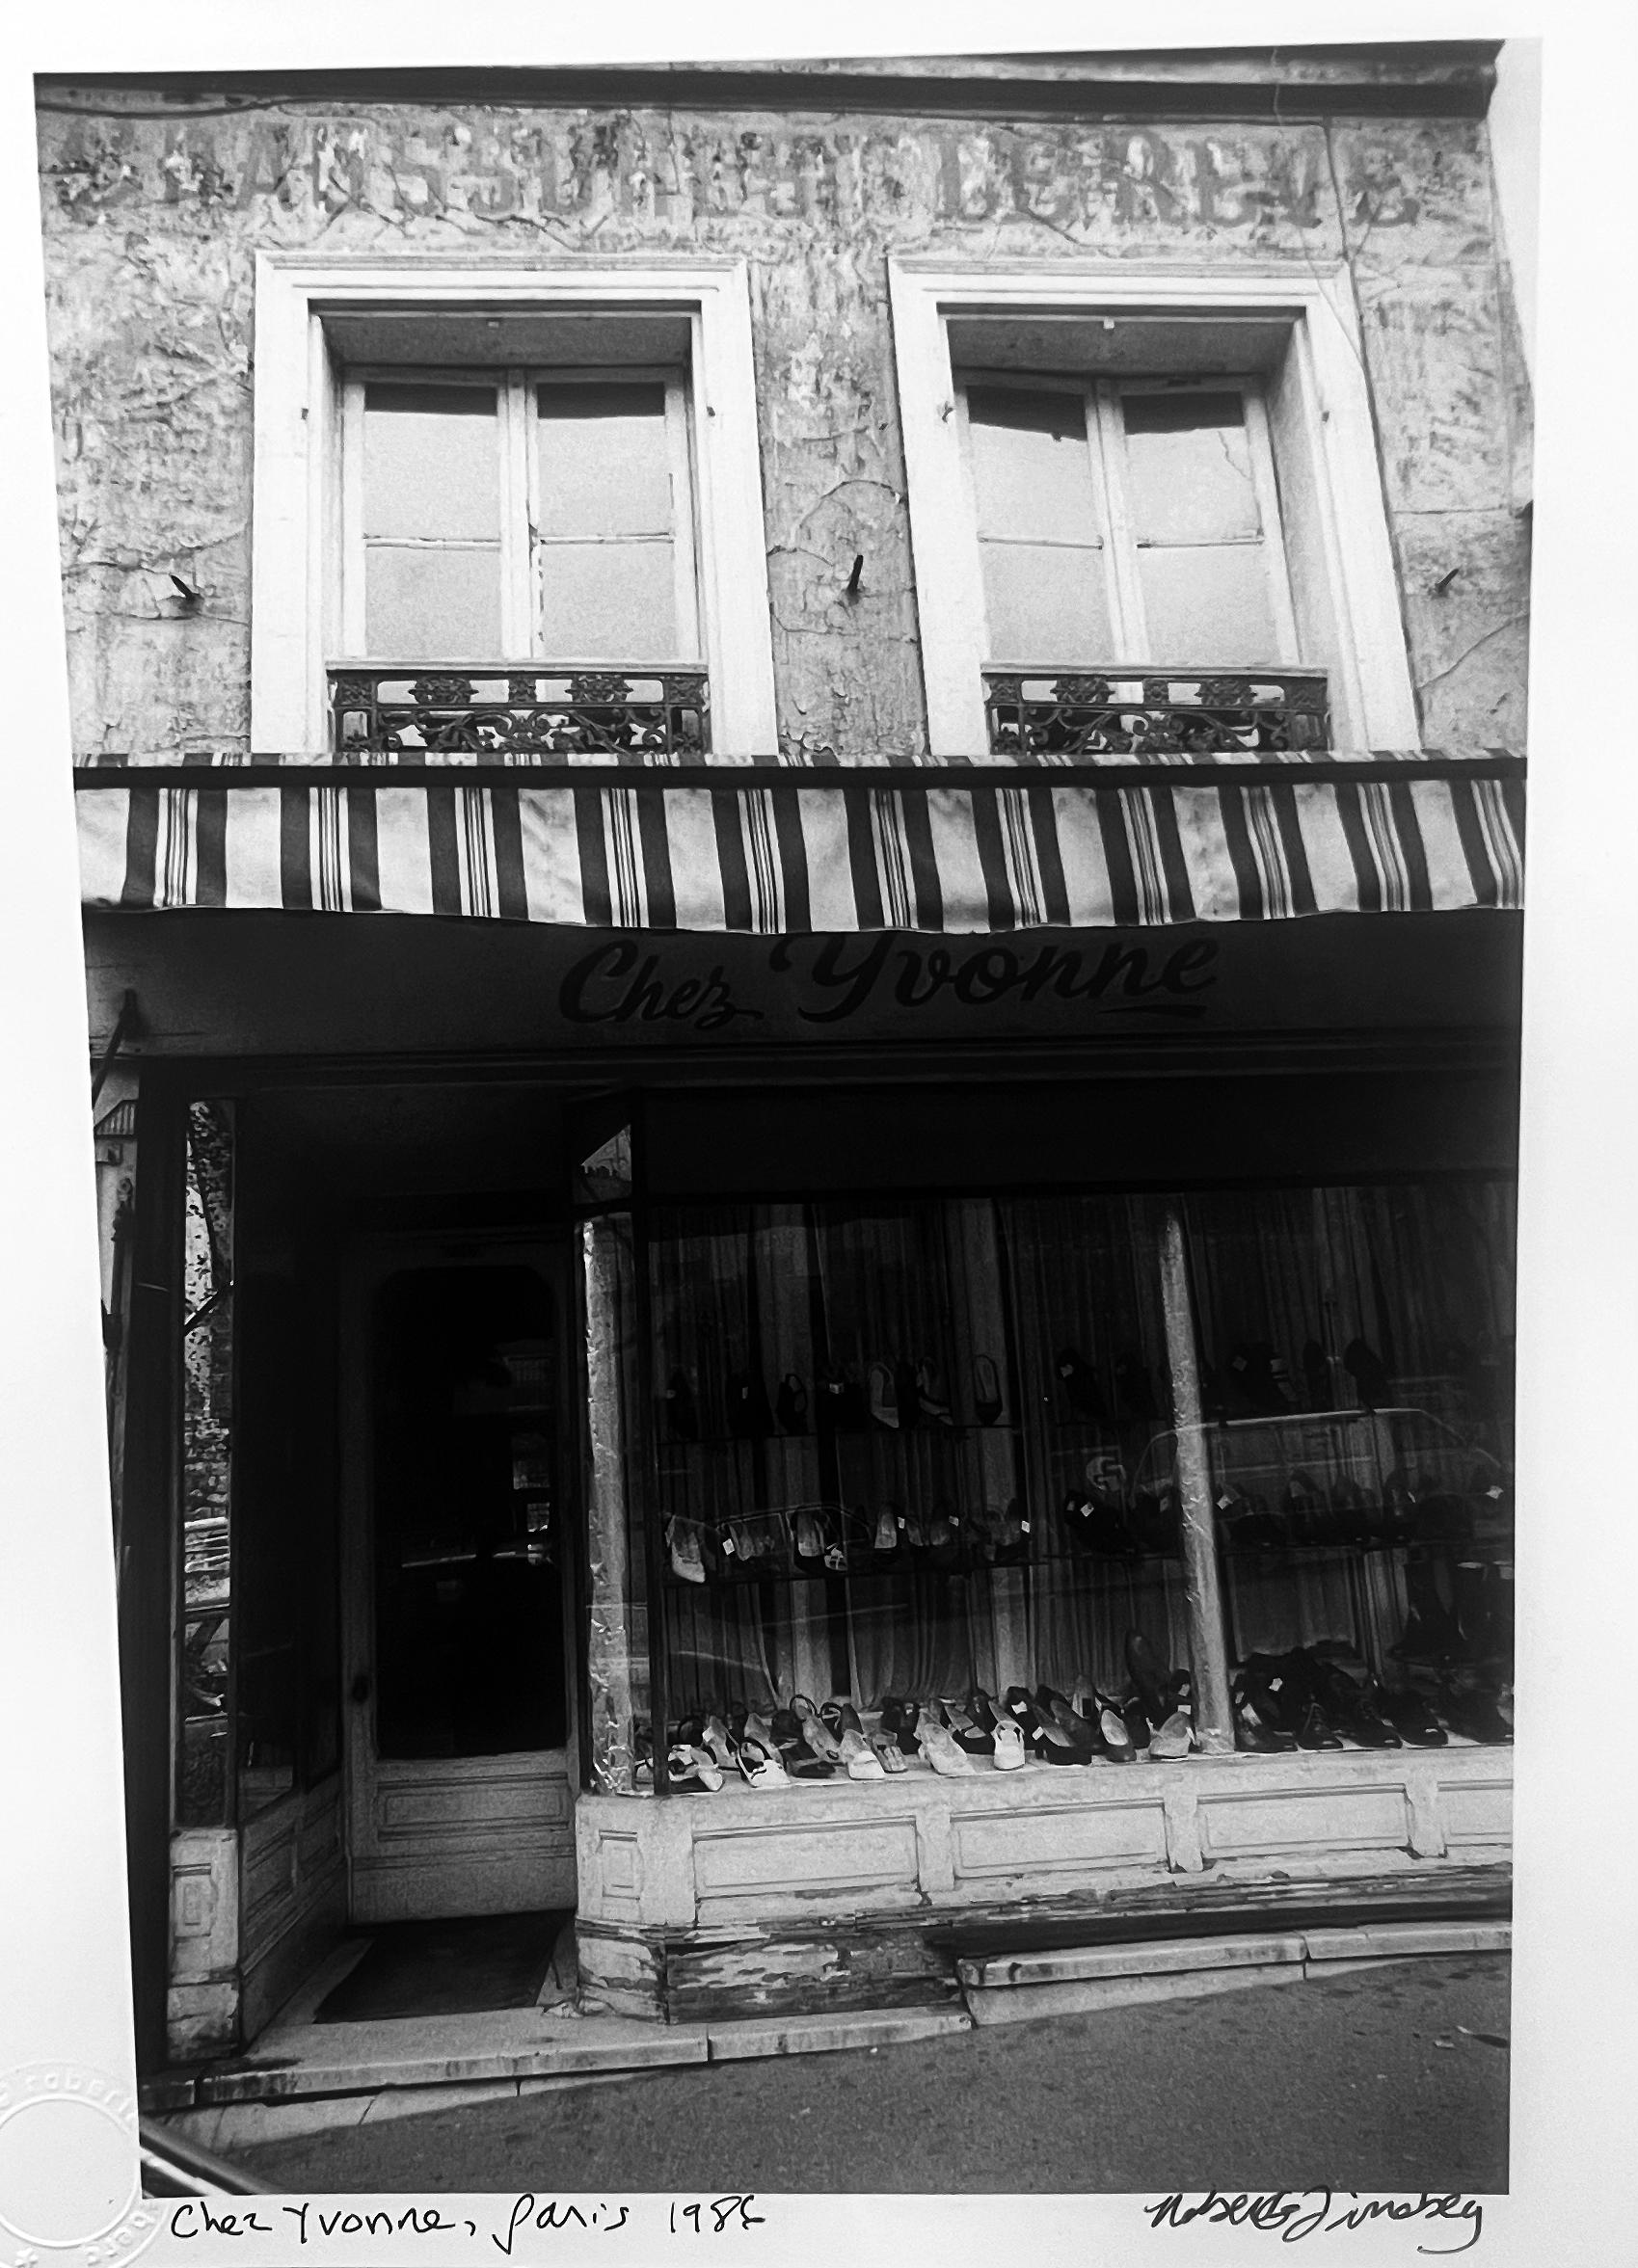 Ein auf Film aufgenommenes Schwarz-Weiß-Bild der Architektur und des Schaufensters eines Schuhgeschäfts in einem alten Pariser Viertel zog Roberta Fineberg an, die sich von den vergessenen und sehr französischen Orten im Paris der 1980er Jahre